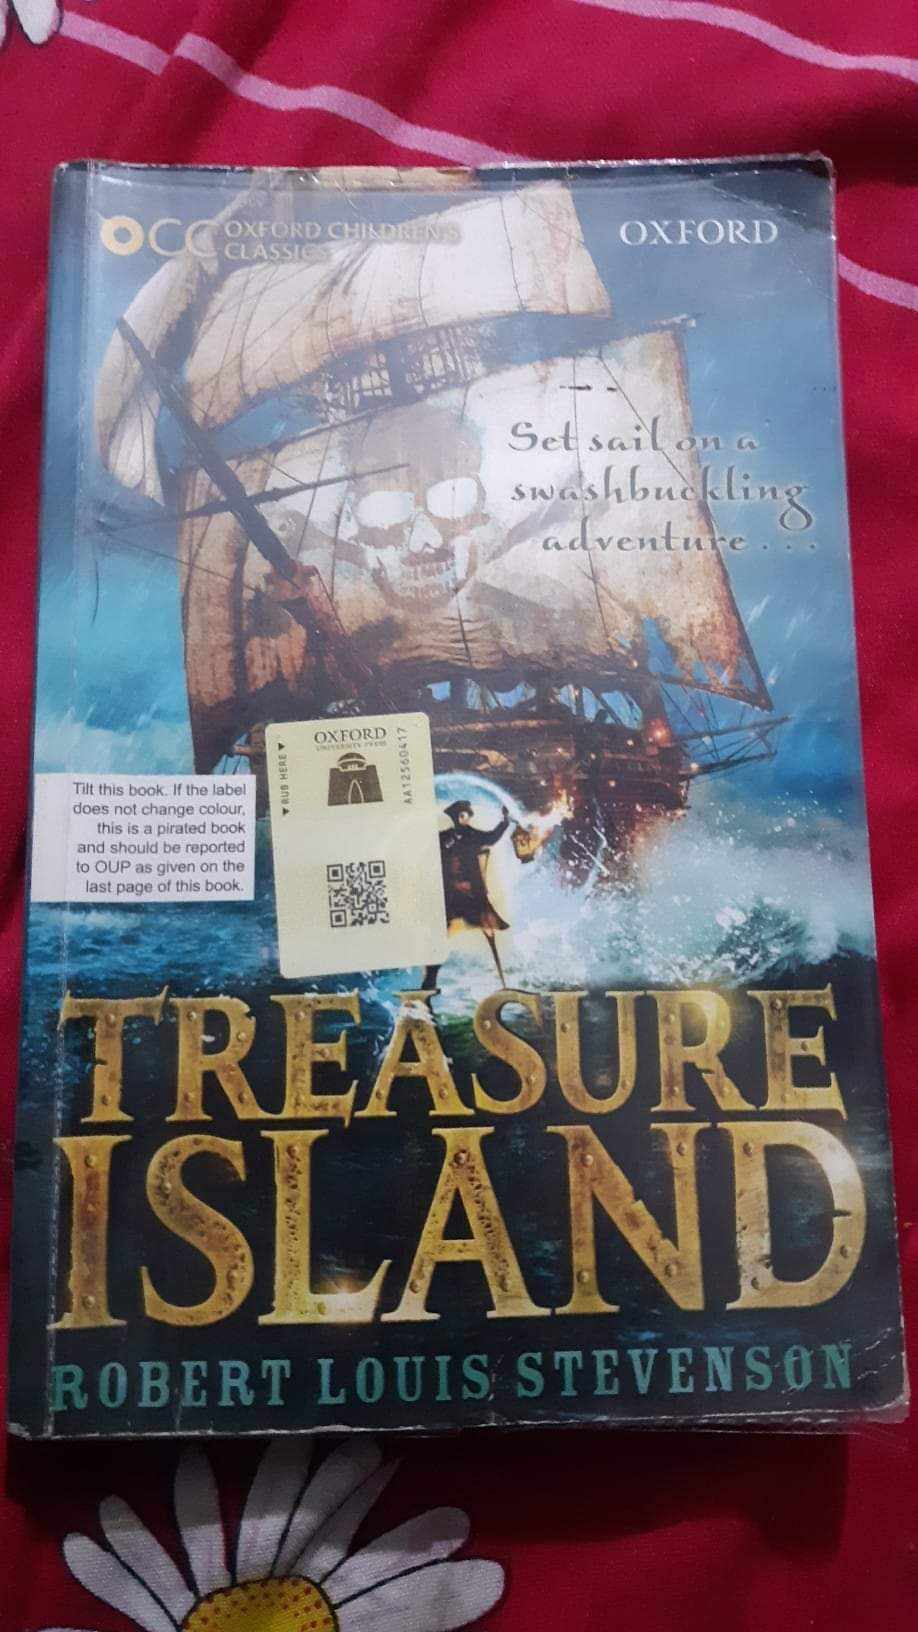 Novel Treasure Island (Robert Louis Stevenson)